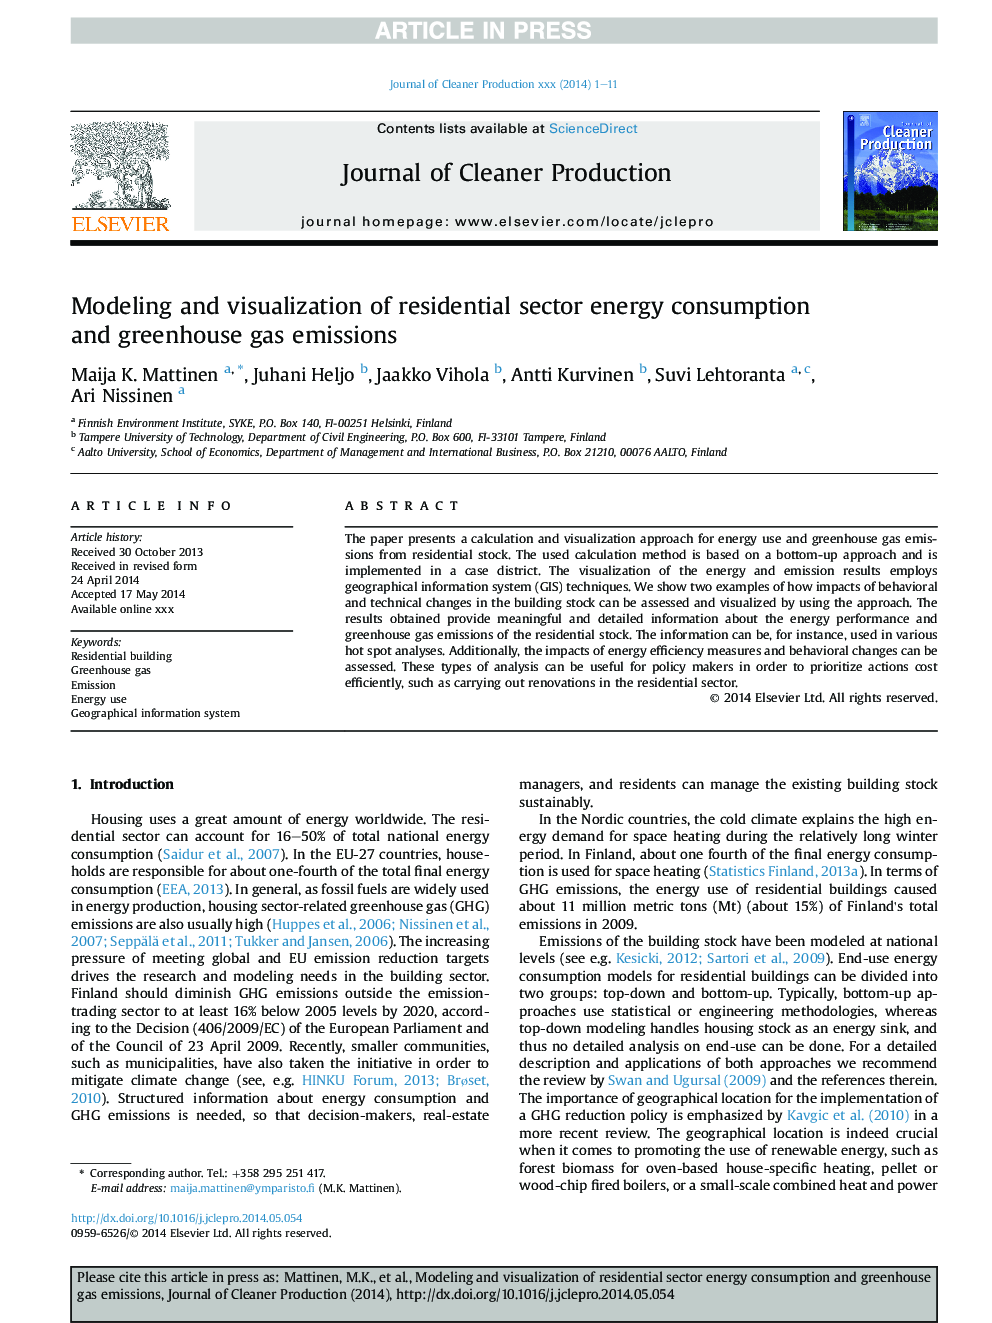 مدلسازی و تجسم انرژی مصرفی بخش مسکونی و انتشار گازهای گلخانه ای 